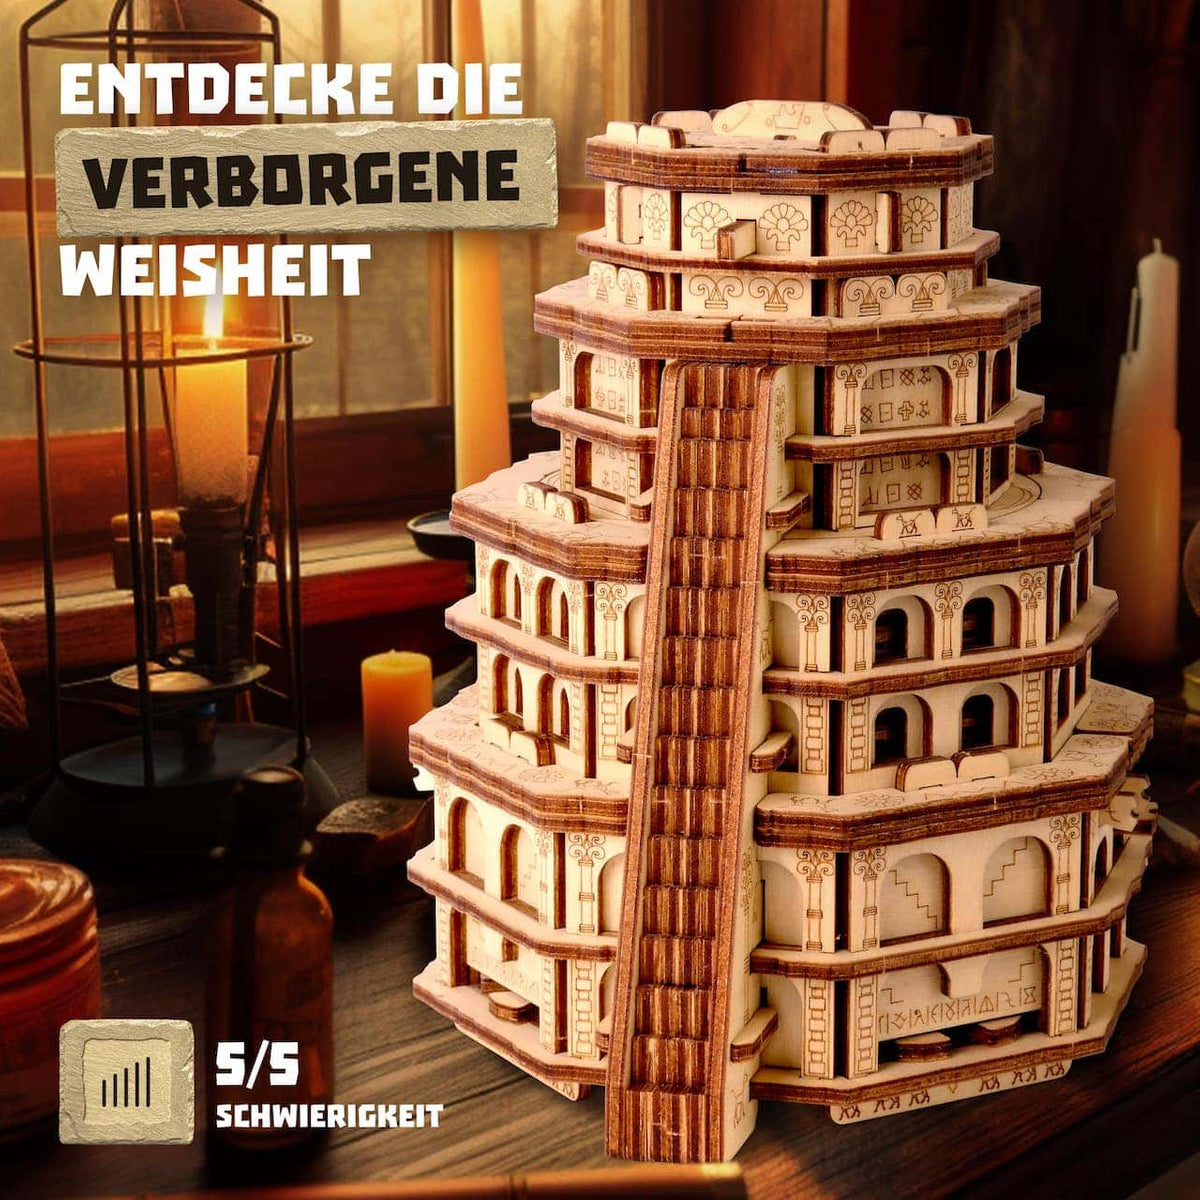 Quest Tower - herausfordernde Puzzlebox mit Geheimfach